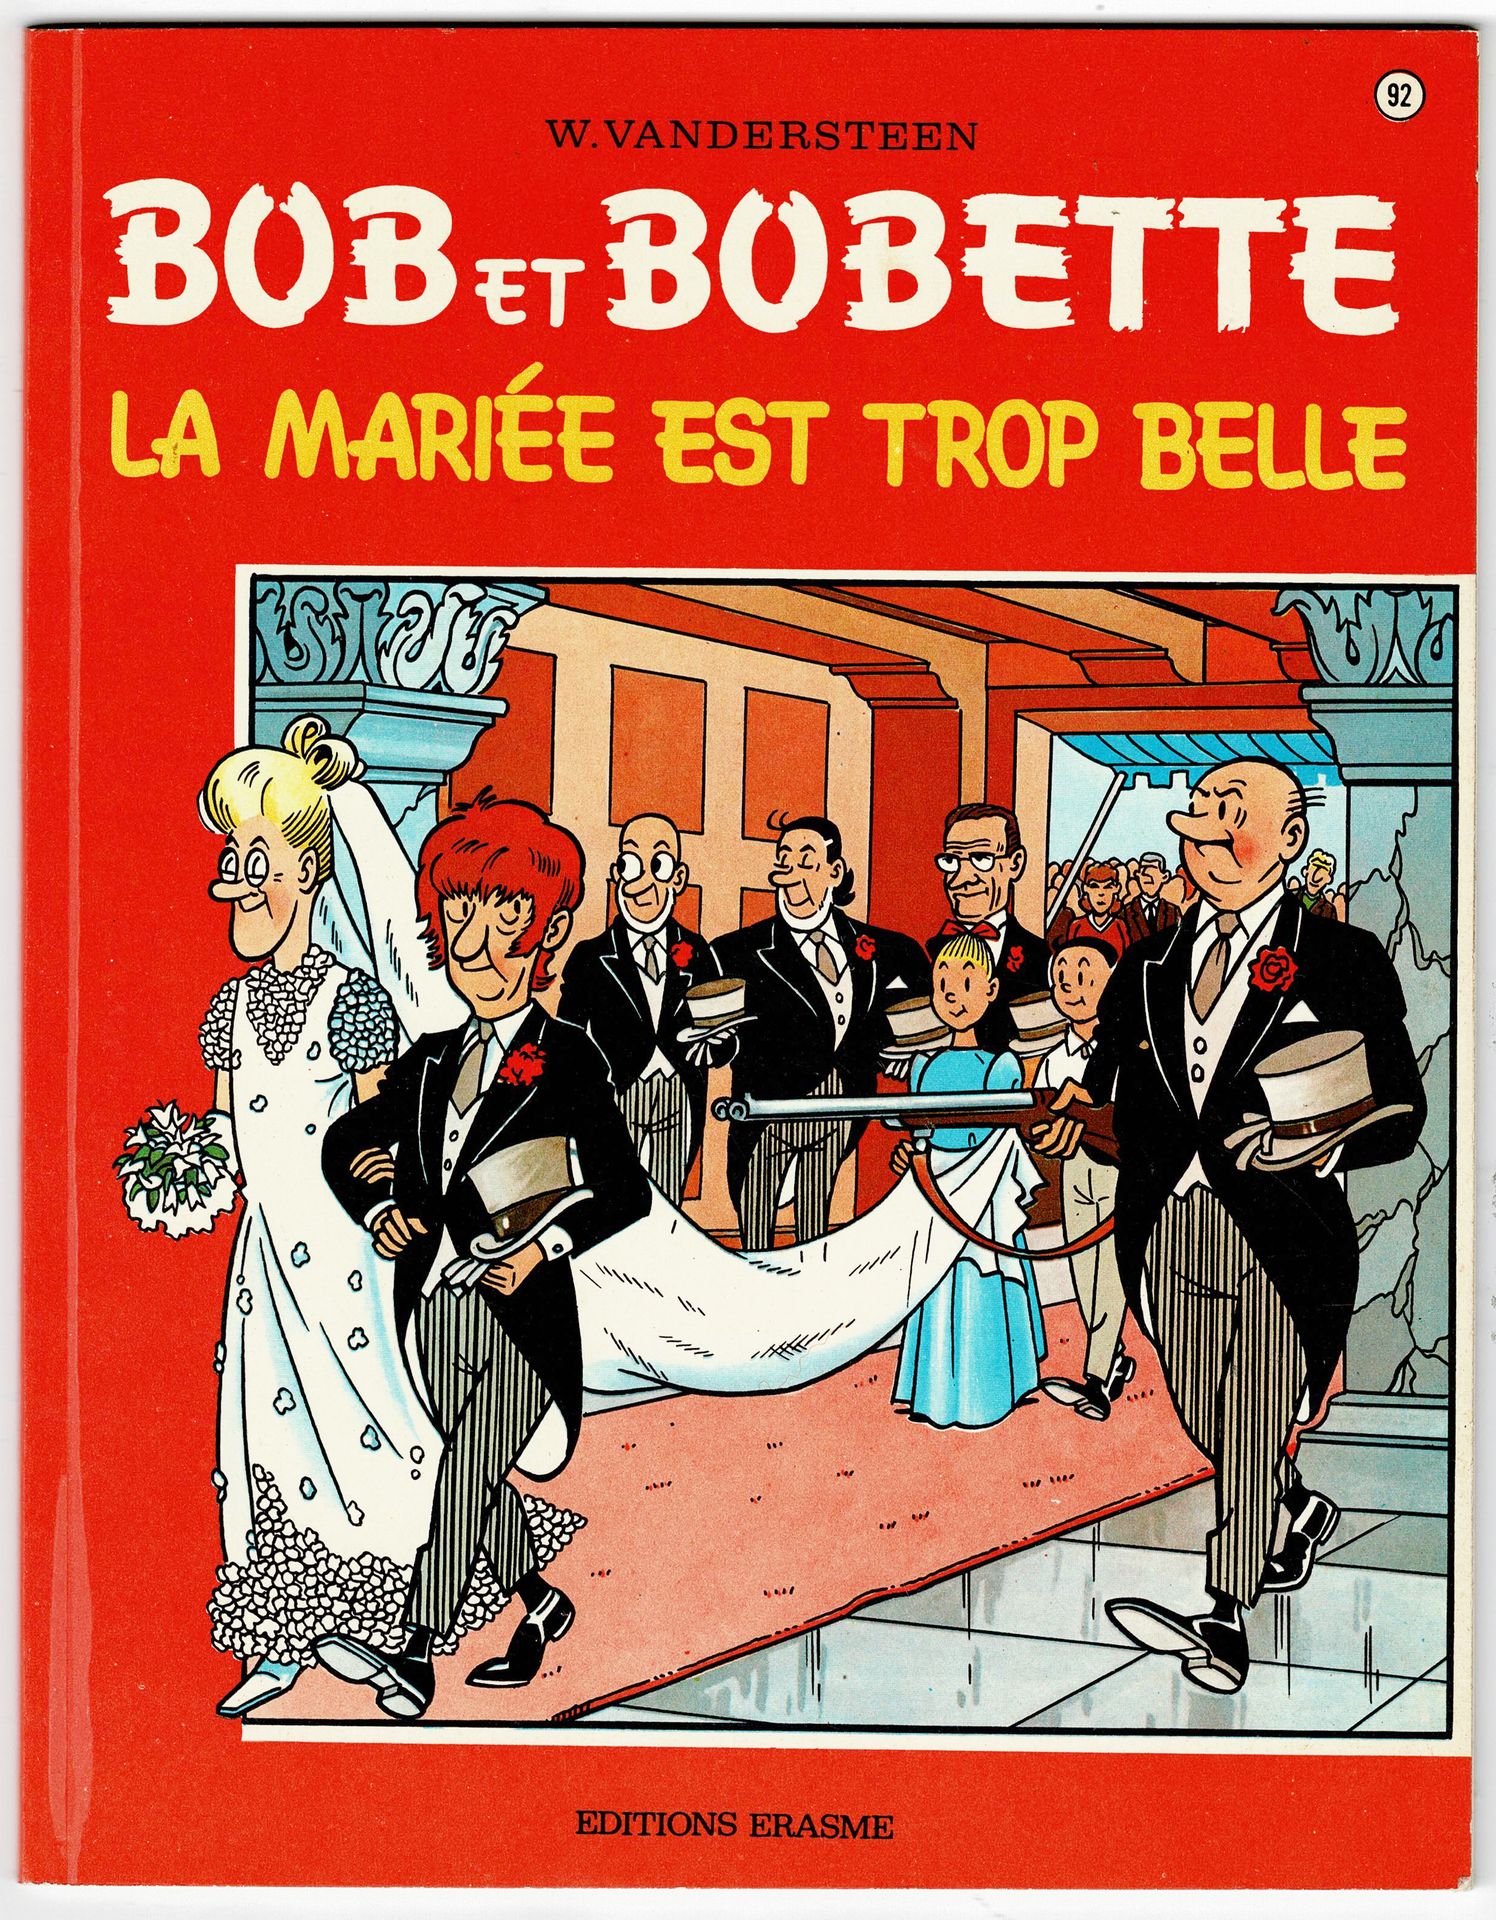 Bob et Bobette 
第92和97卷。一套2本的专辑，第一版，全新状态。